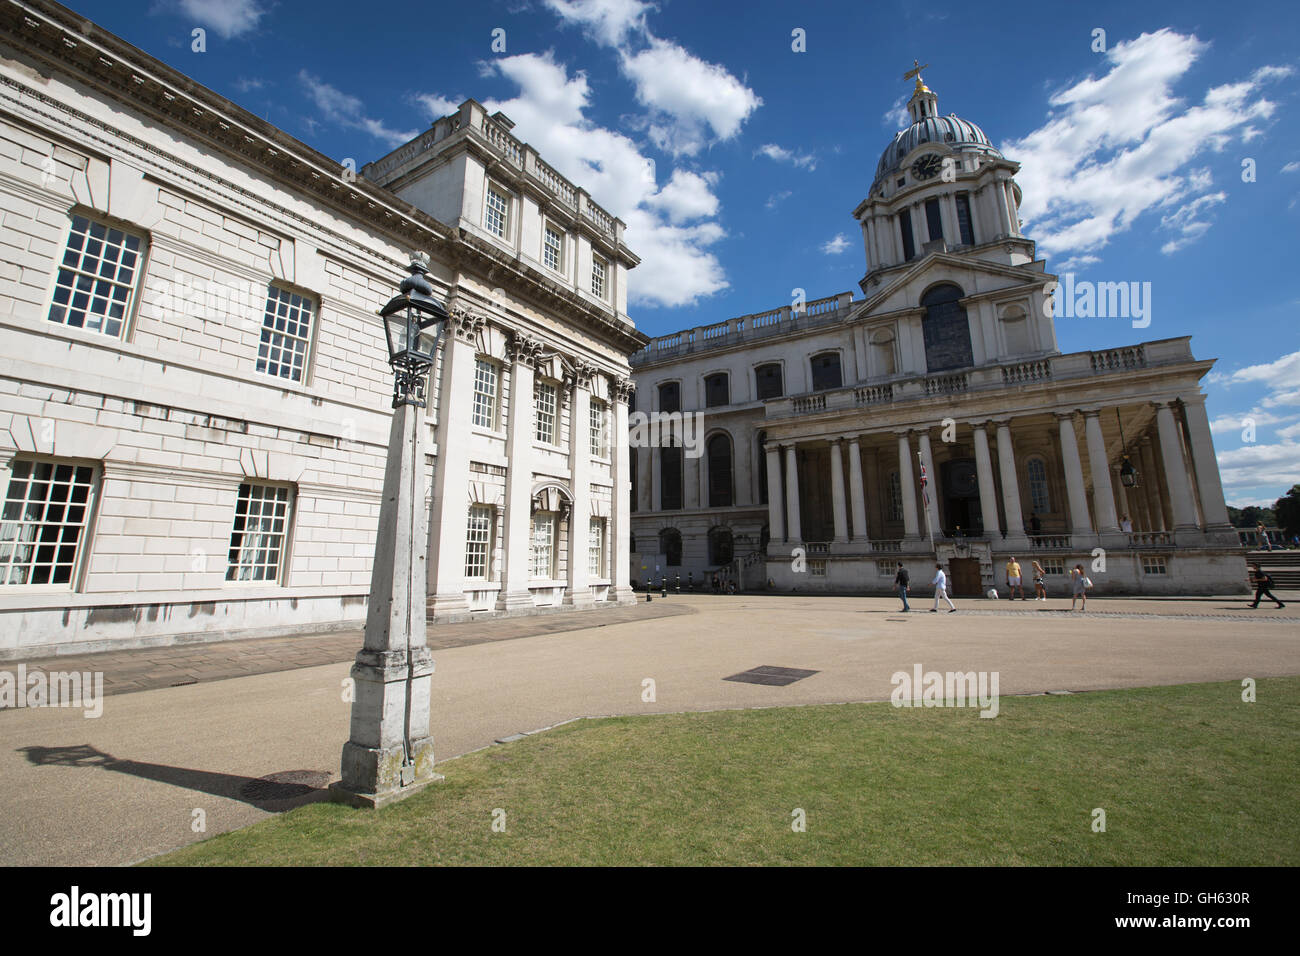 Queen Mary cappella della corte, all'interno della vecchia Royal Navy College, Greenwich, a sud-est di Londra, England, Regno Unito Foto Stock